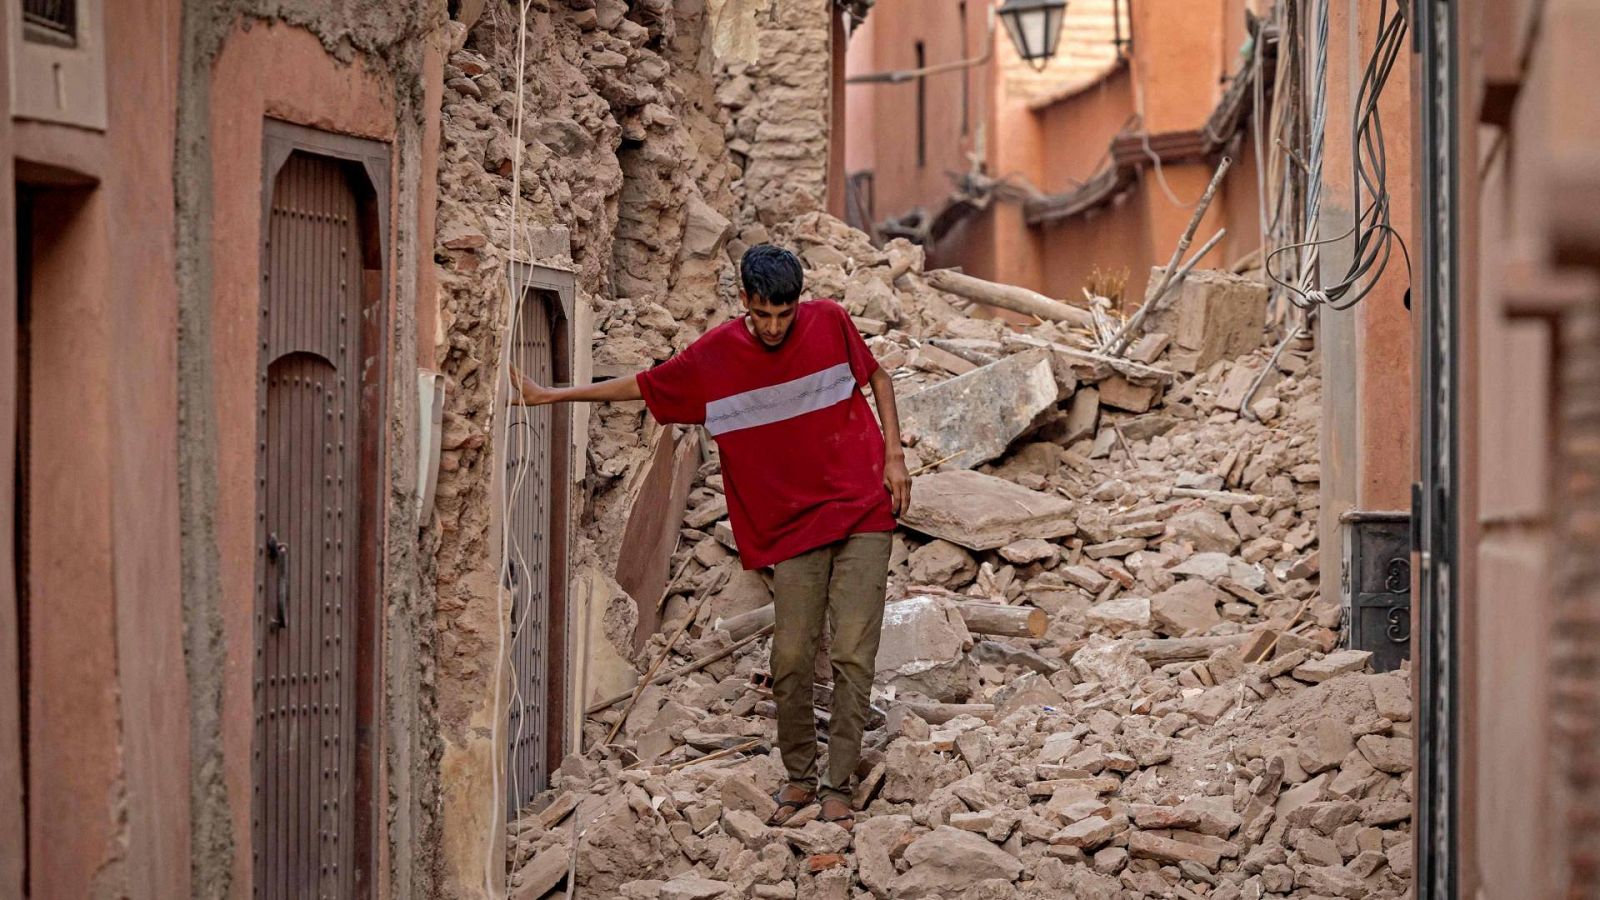 Imágenes del terremoto en Marruecos: un residente trata de avanzar entre los escombros en Marrakech